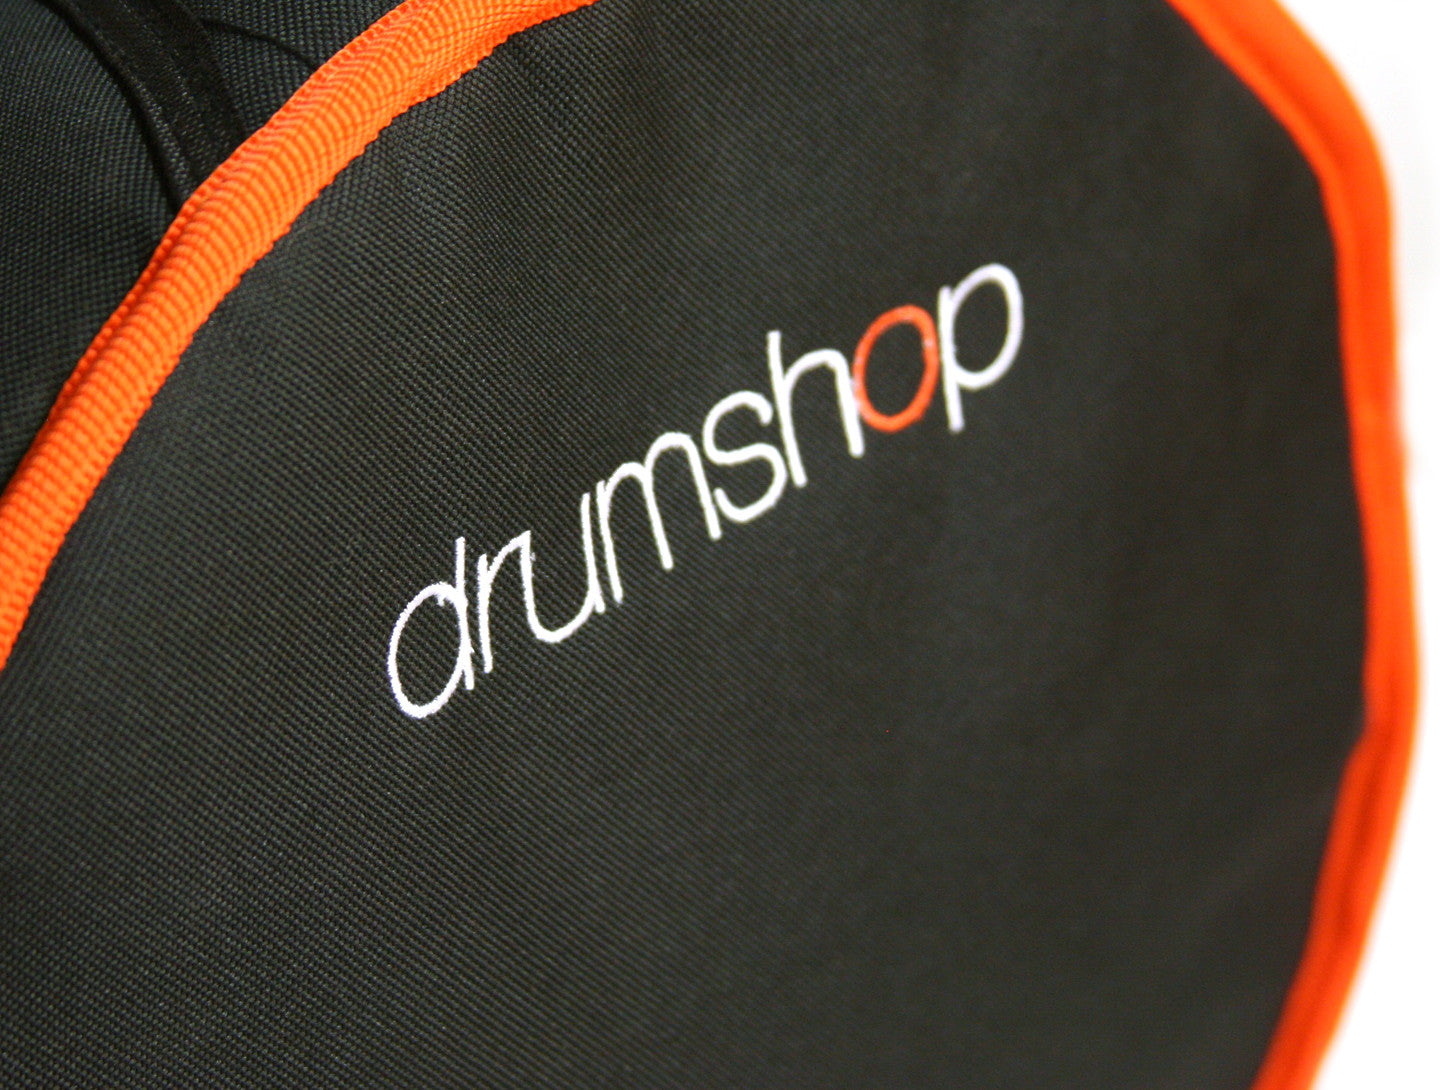 Drumshop 10